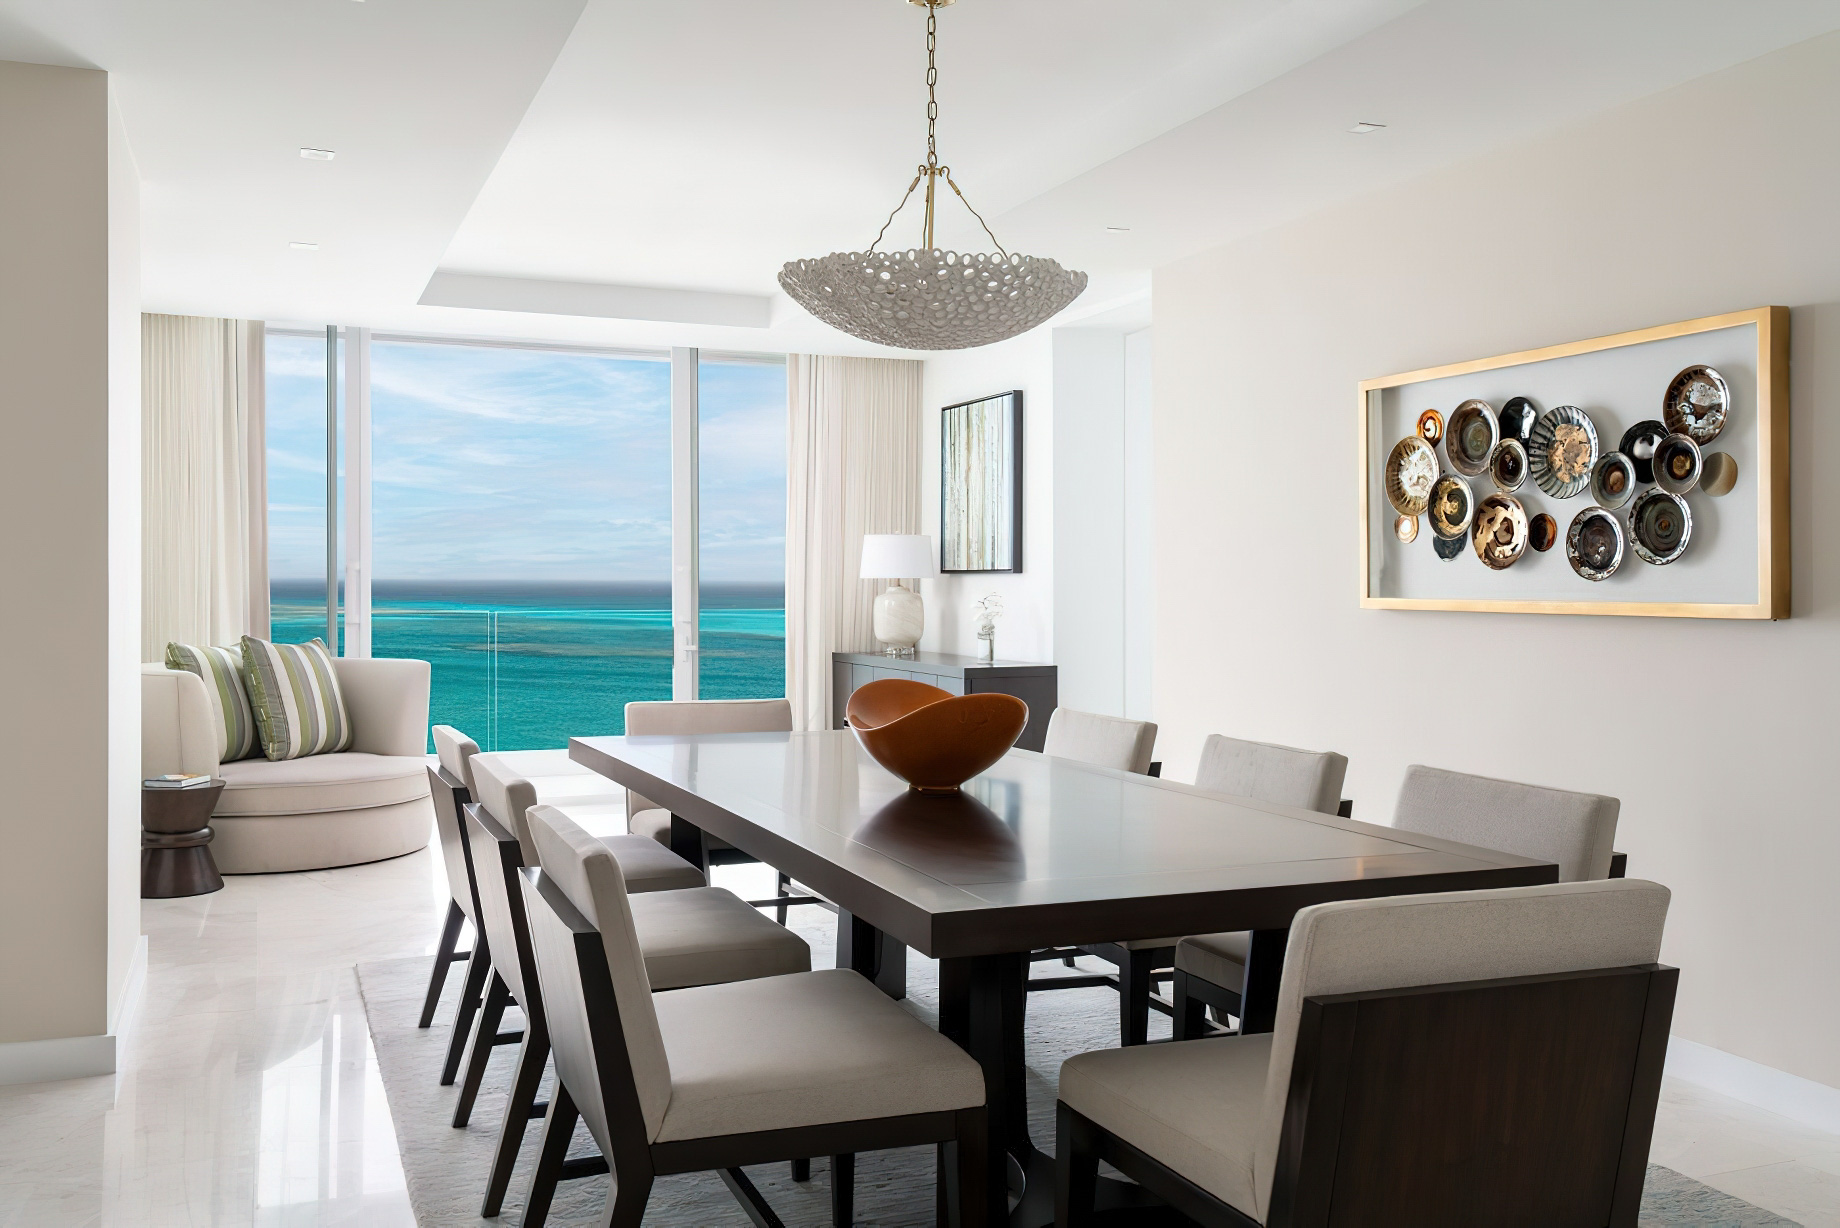 The Ritz-Carlton, Turks & Caicos Resort – Providenciales, Turks and Caicos Islands – Ritz-Carlton Suite Dining Room